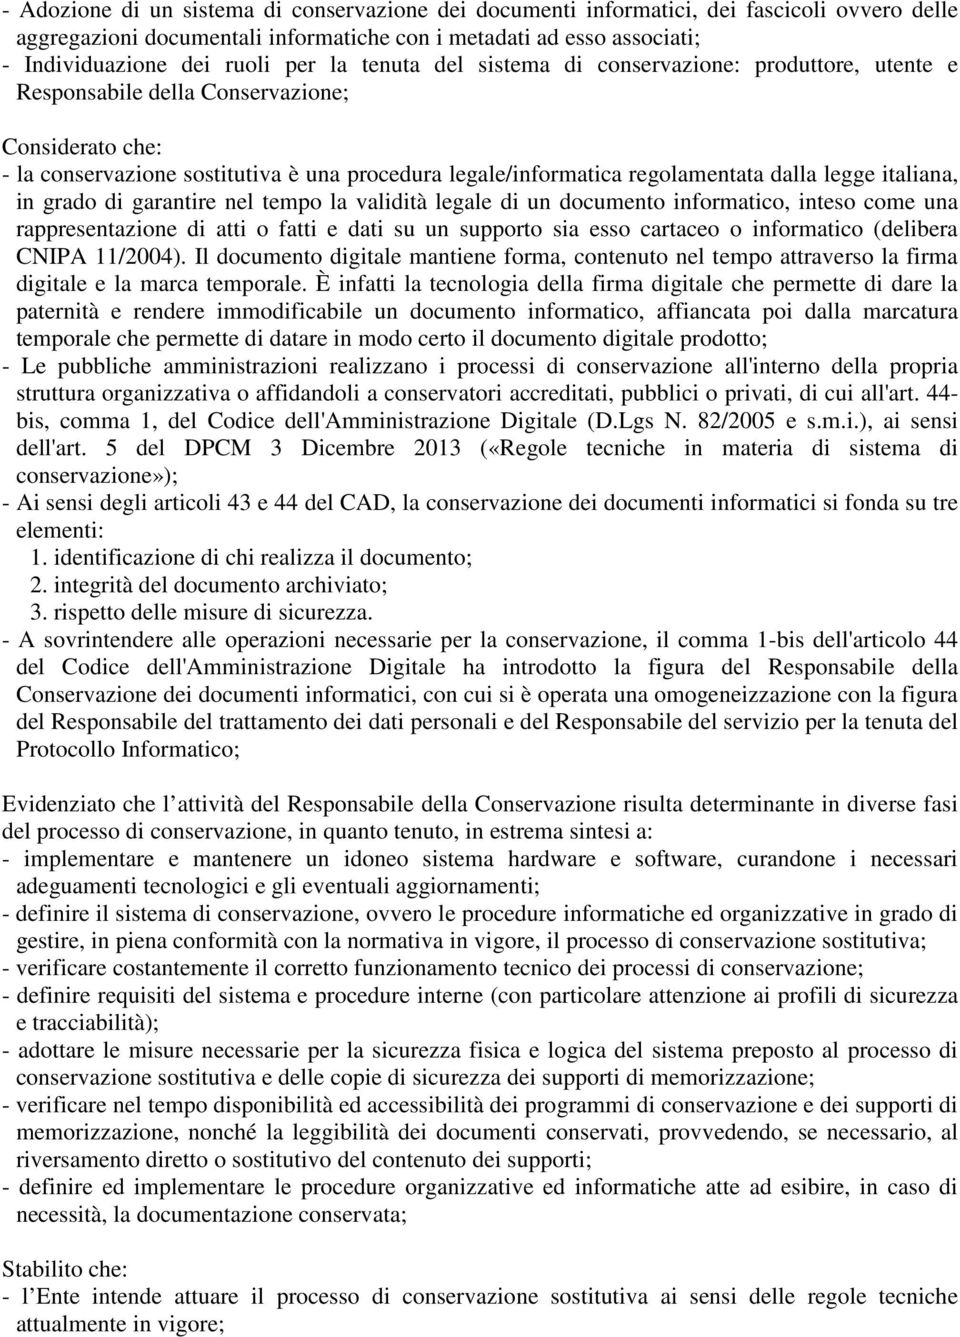 legge italiana, in grado di garantire nel tempo la validità legale di un documento informatico, inteso come una rappresentazione di atti o fatti e dati su un supporto sia esso cartaceo o informatico